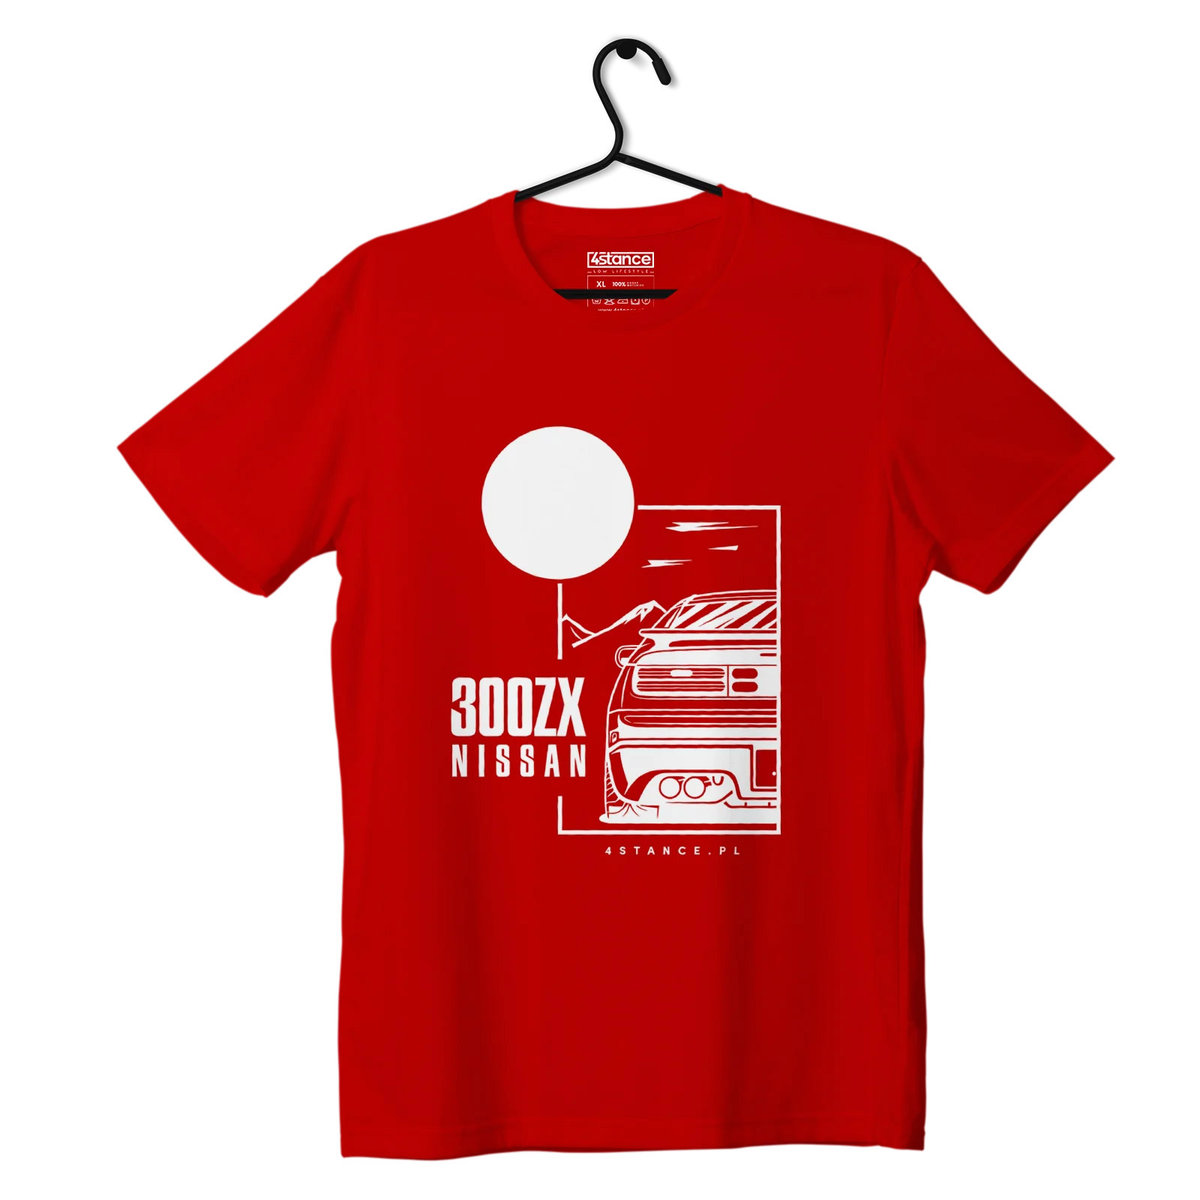 Zdjęcia - Odzież motocyklowa Nissan T-shirt koszulka  300ZX czerwona-L 